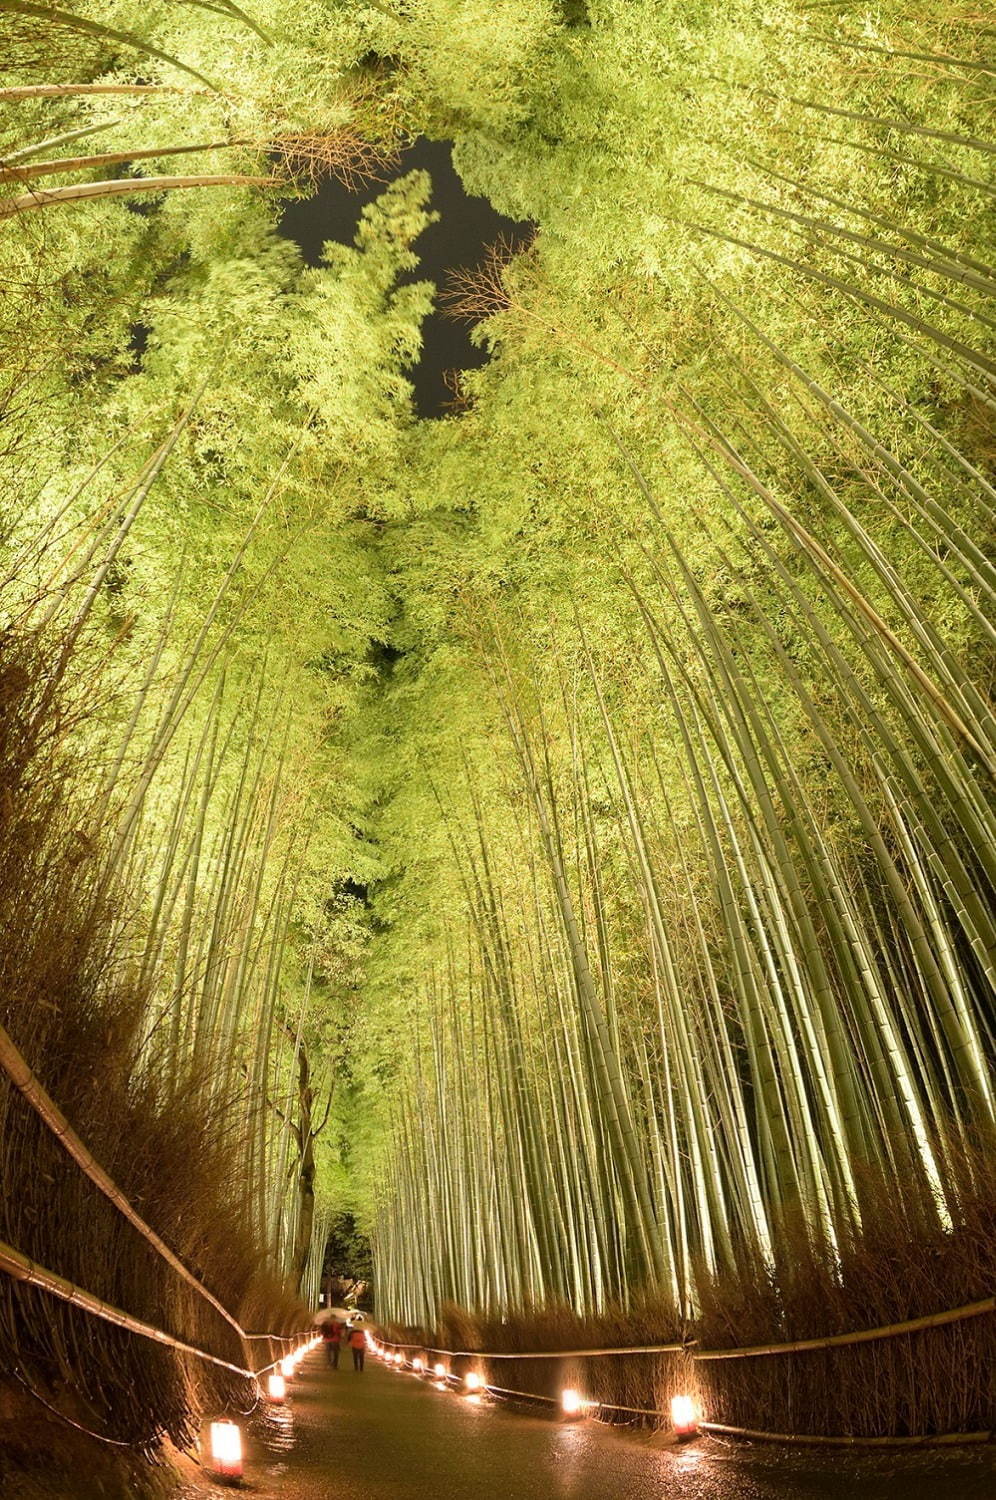 京都 嵐山 観光ガイド 渡月橋や竹林の小径など名所を巡るモデルコース アクセスマップ特集 ファッションプレス